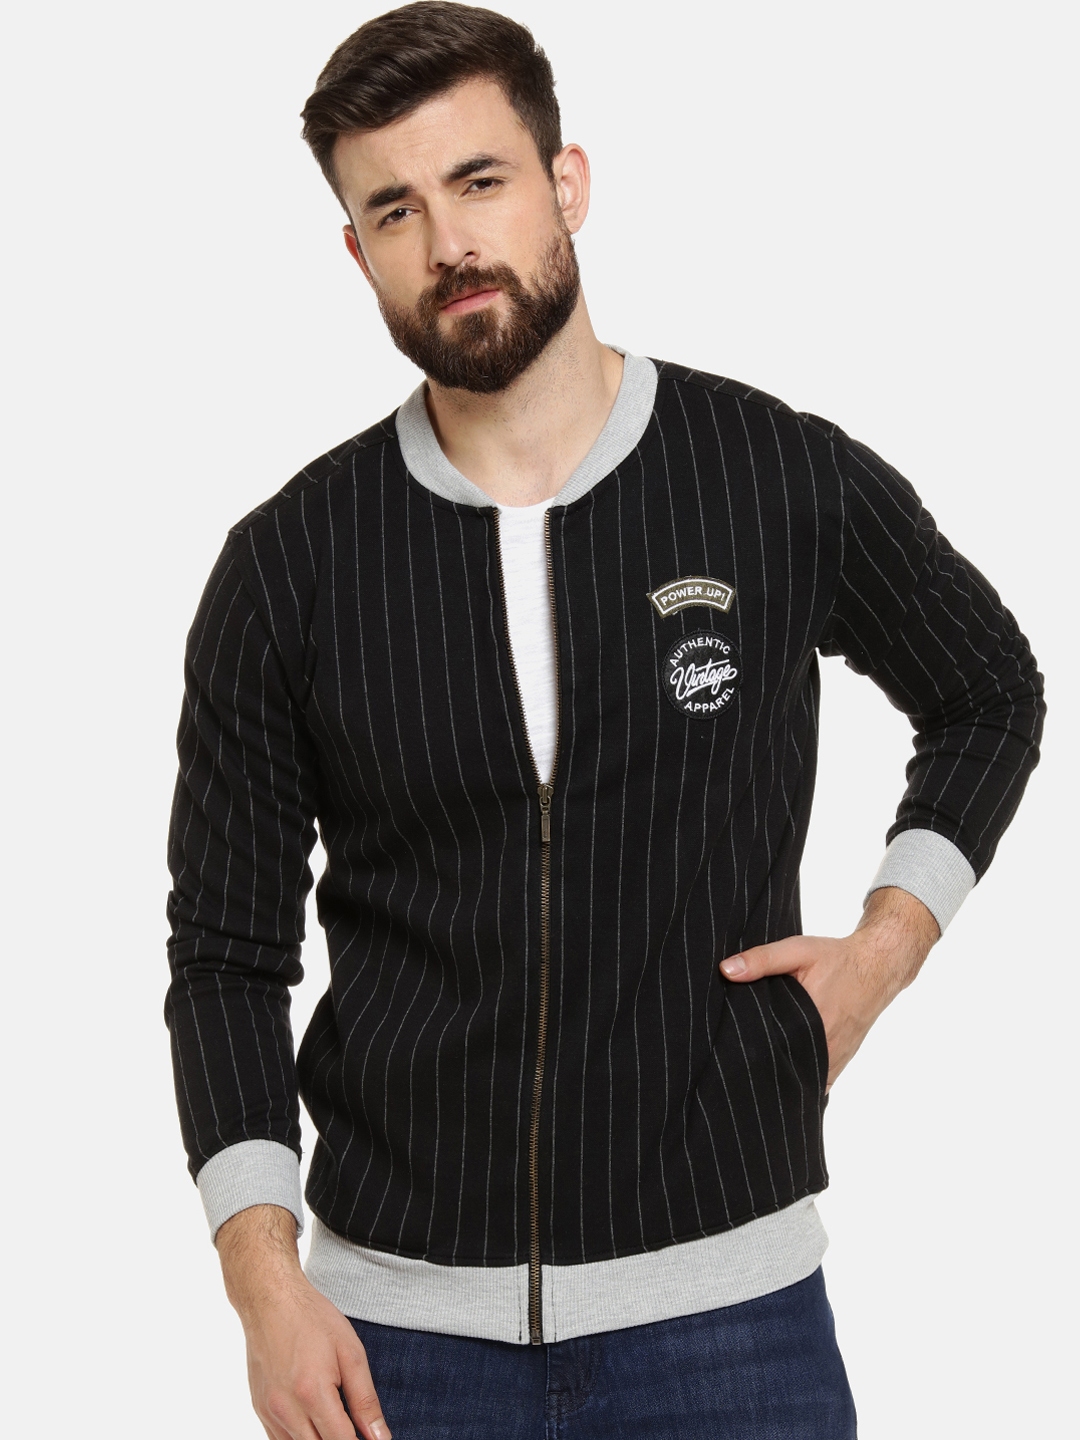 Buy Campus Sutra Men Black Striped Bomber Jacket Jackets for Men